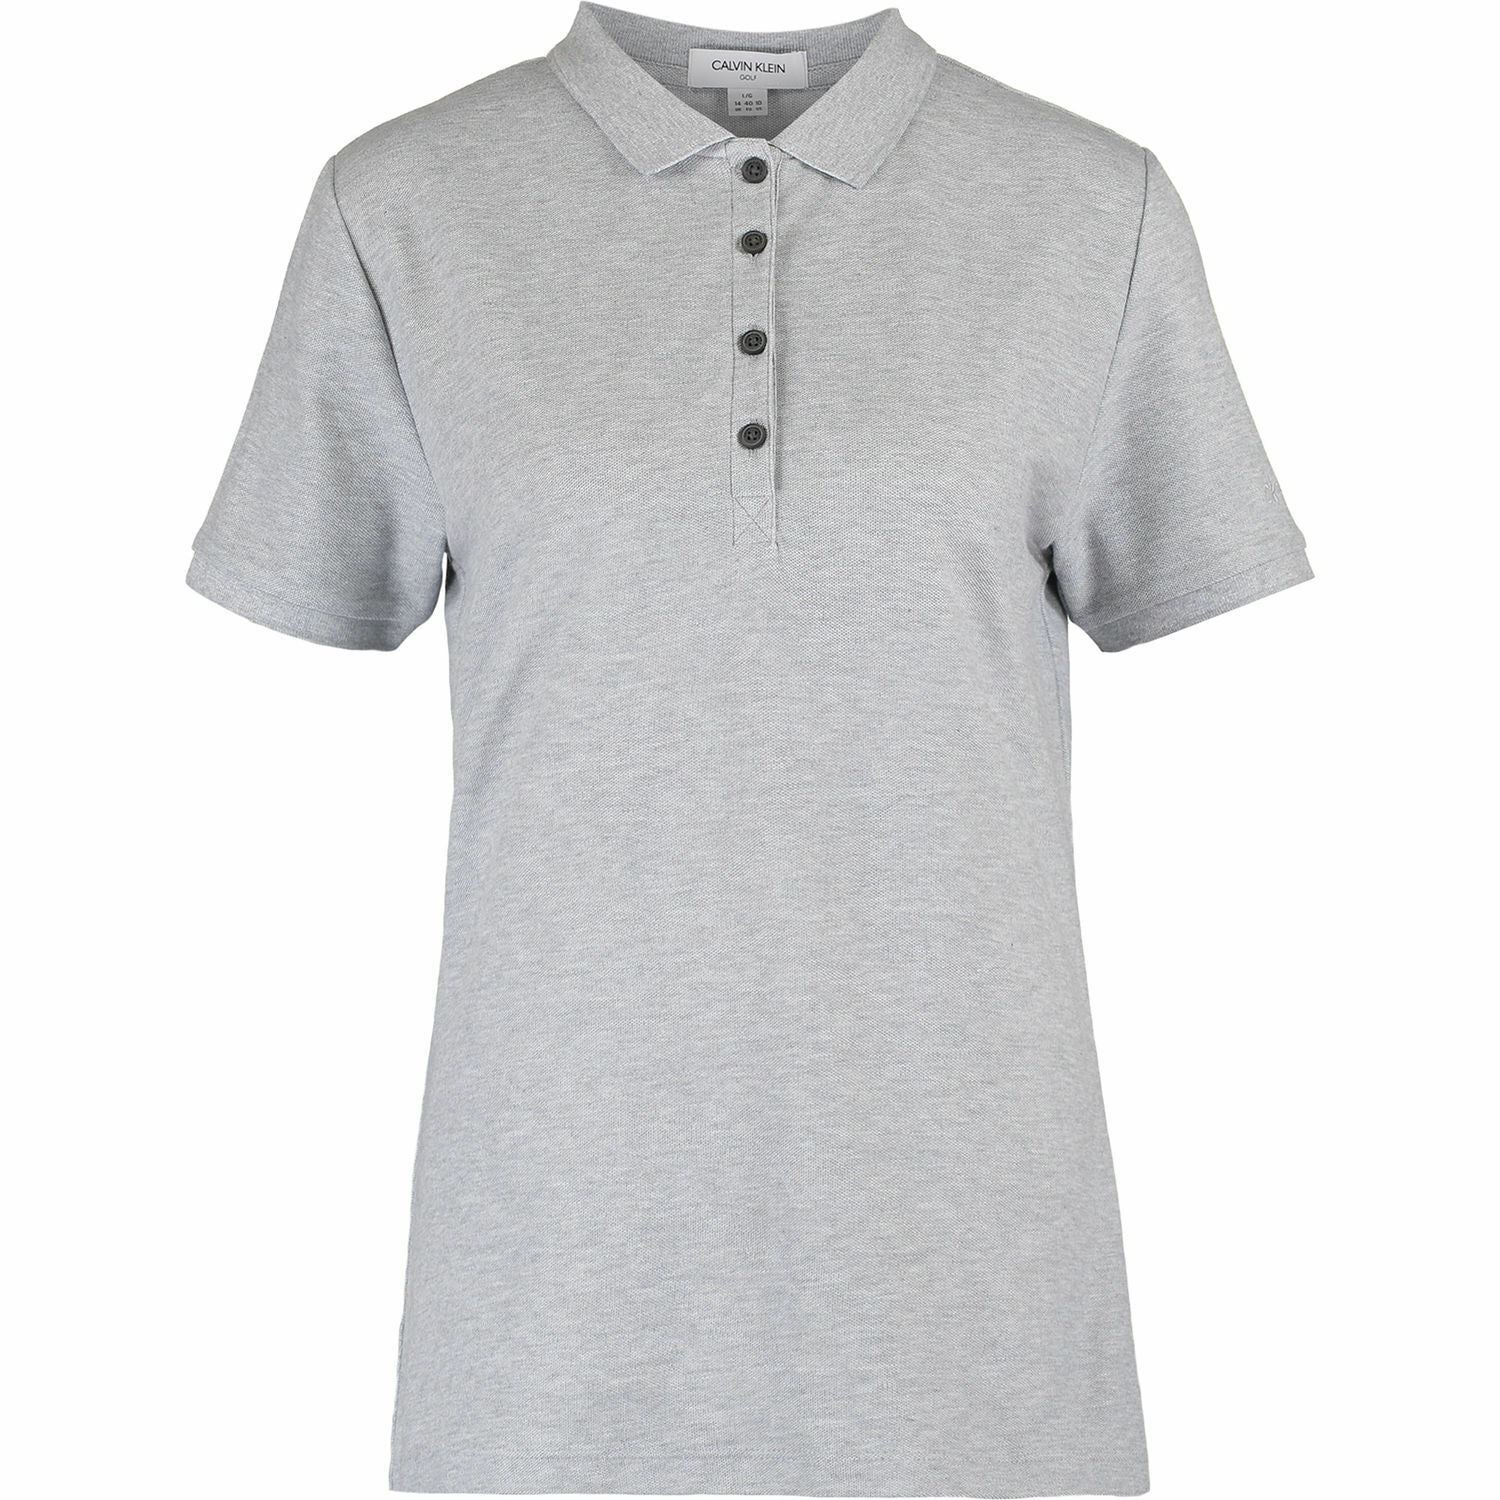 CALVIN KLEIN Women's Cotton Pique Polo Shirt, Grey, size S /size M